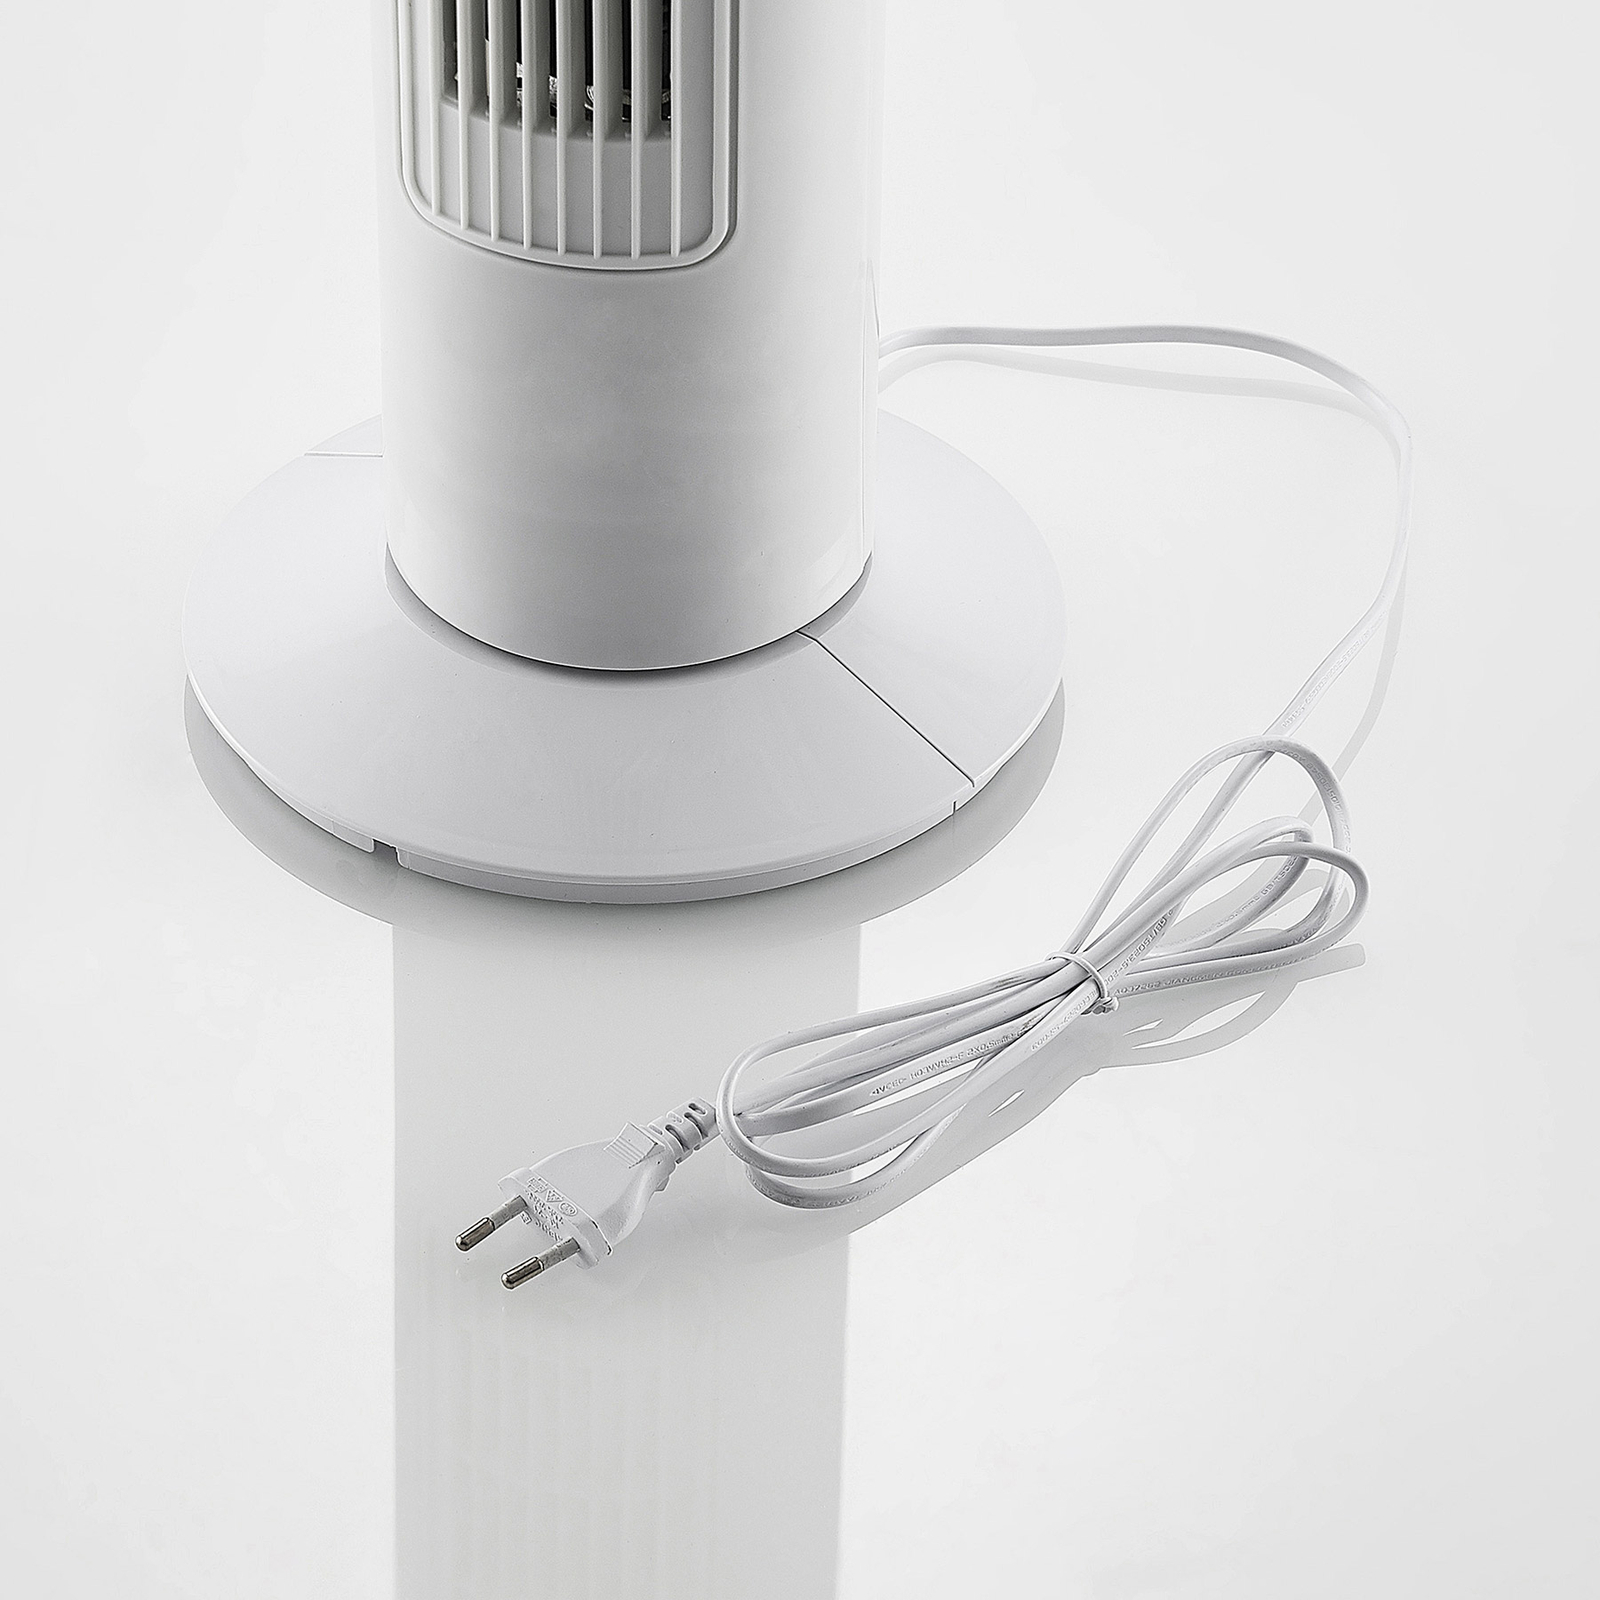 Starluna Torido věžový ventilátor, oscilační